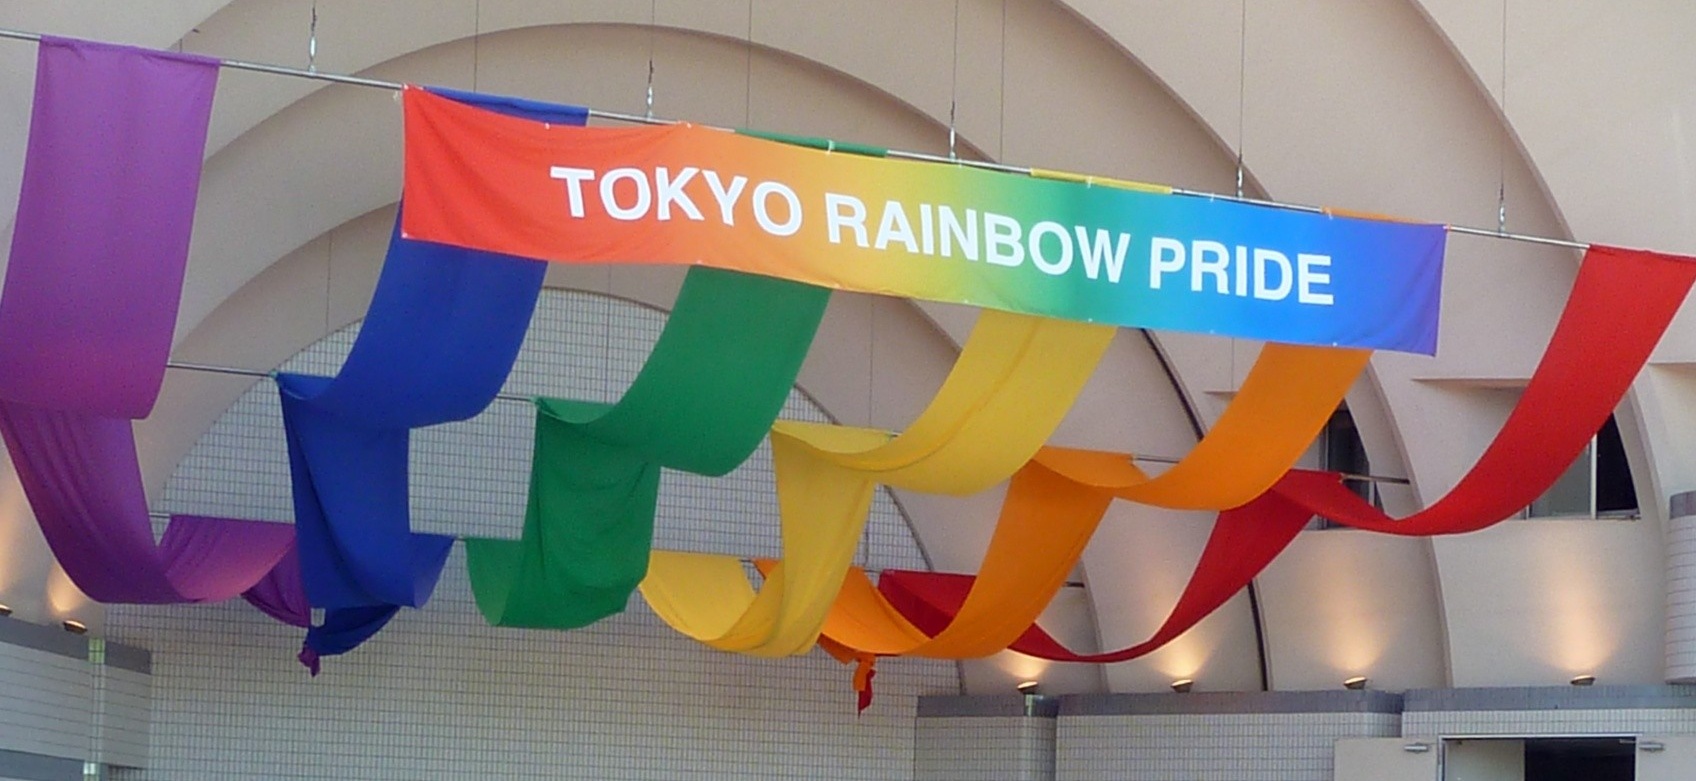 Tokyo Rainbow Pride Guide 2018